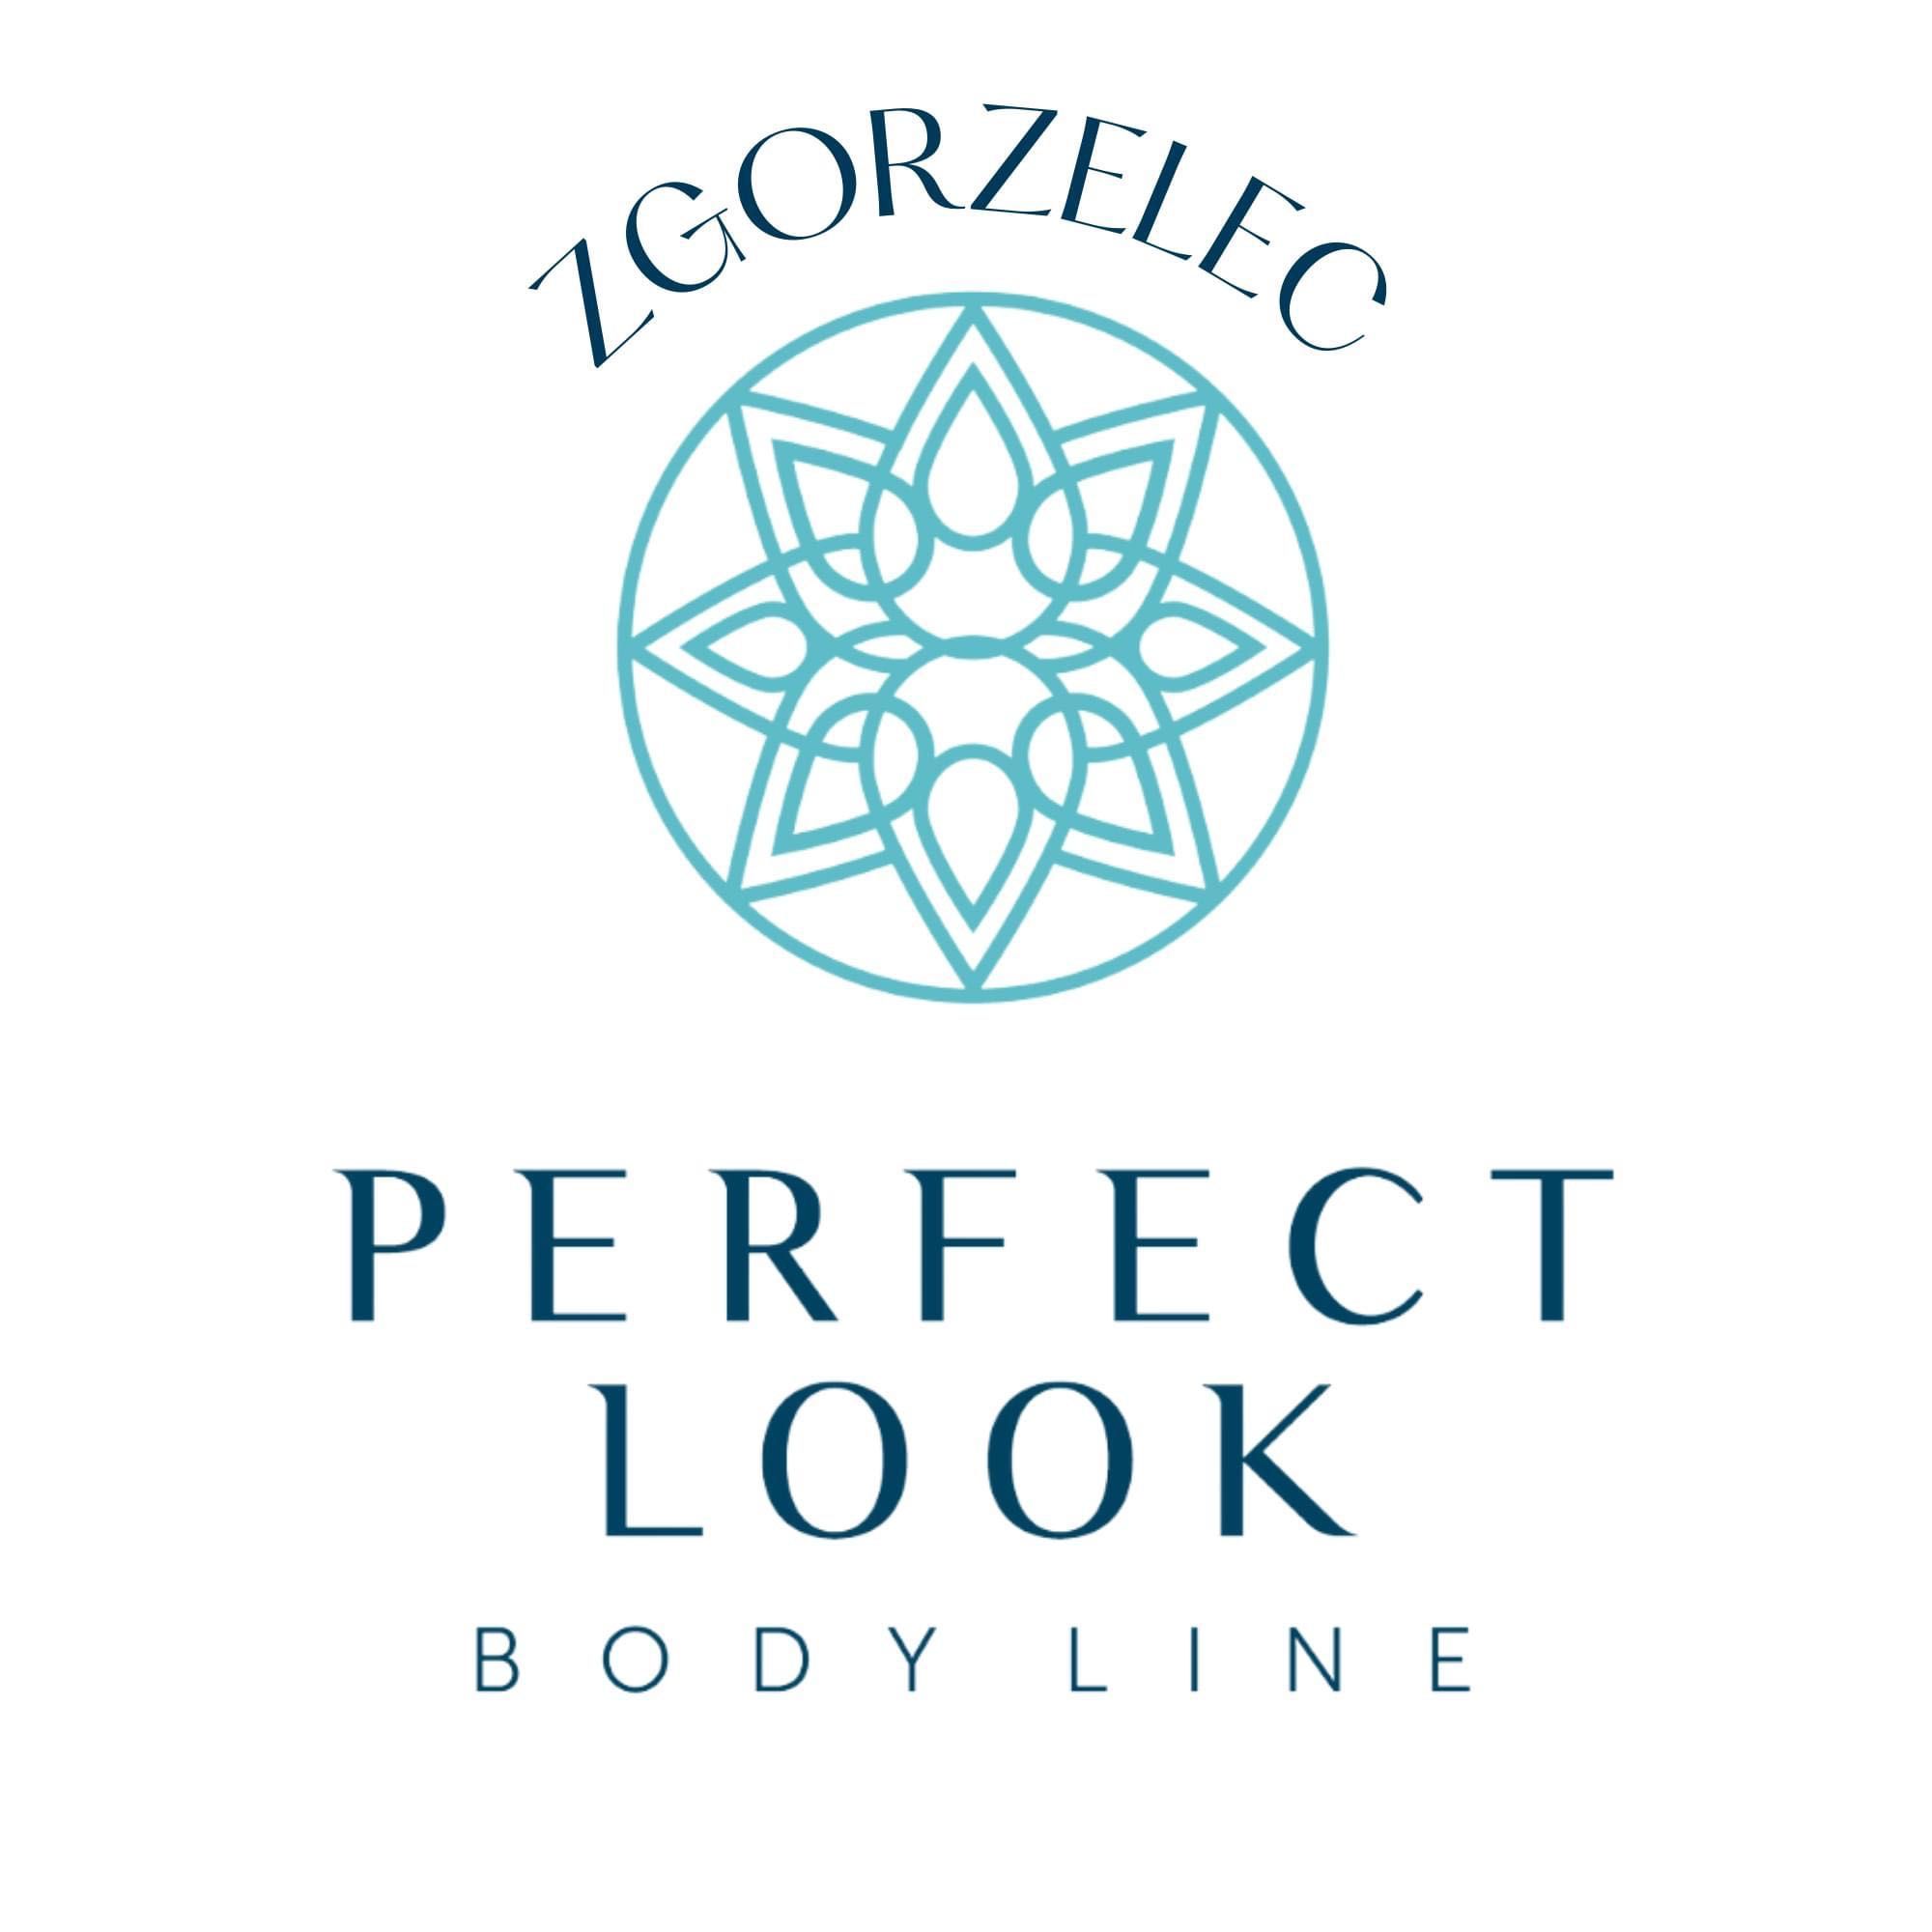 Body Line - Perfect Look Body Line Zgorzelec